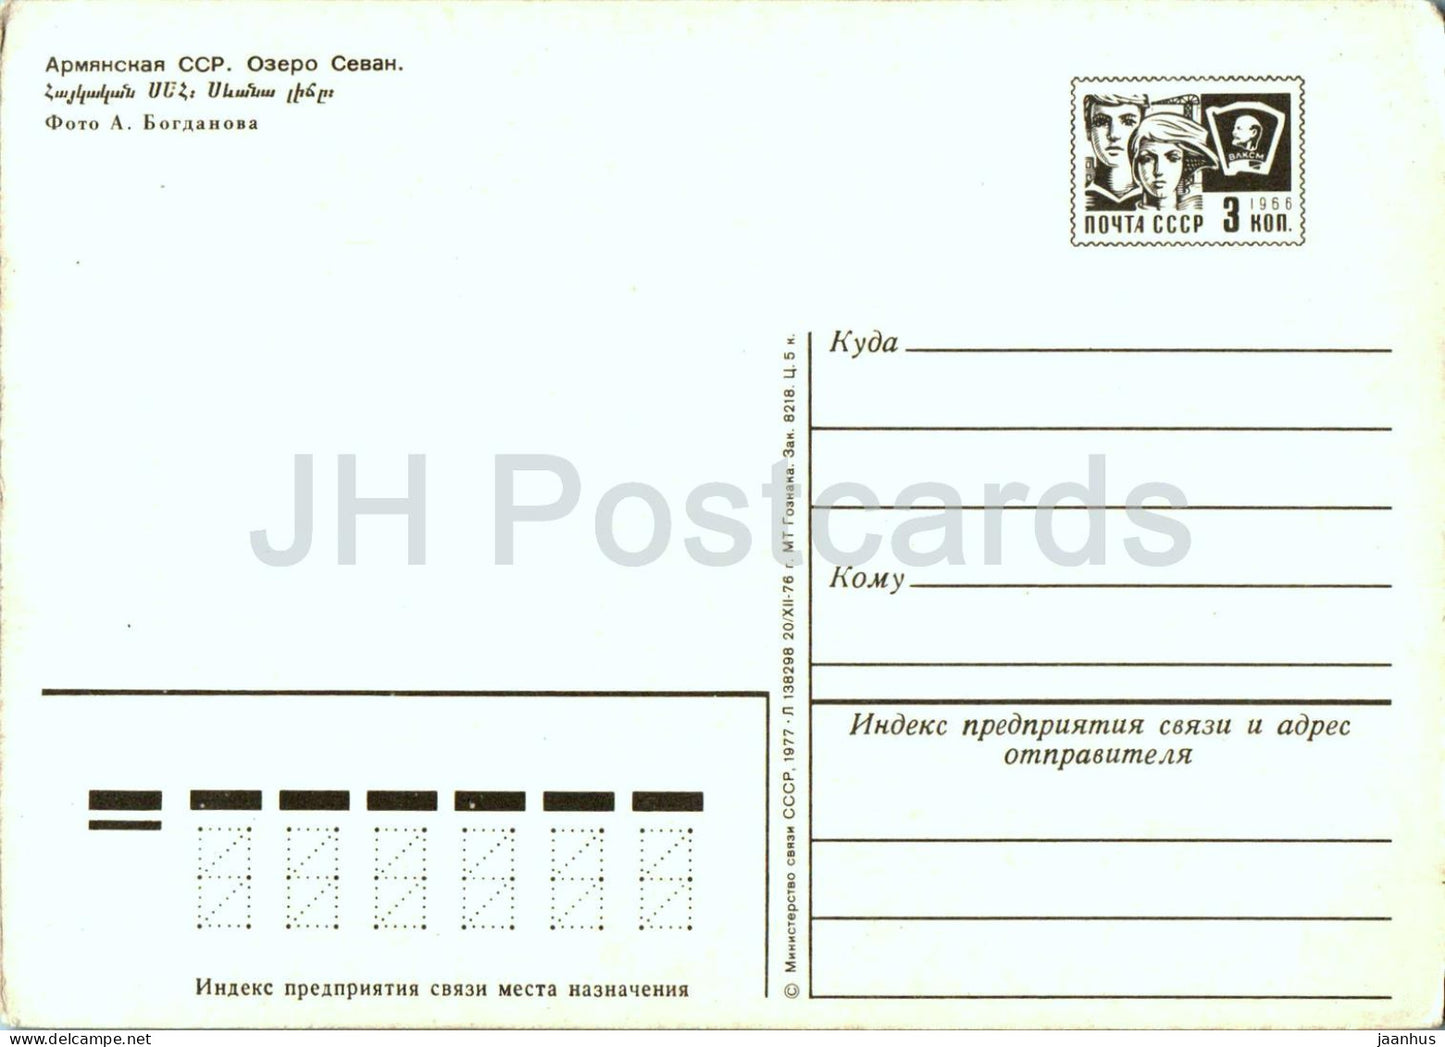 Lake Sevan - 1 - postal stationery - 1977 - Armenia USSR - unused